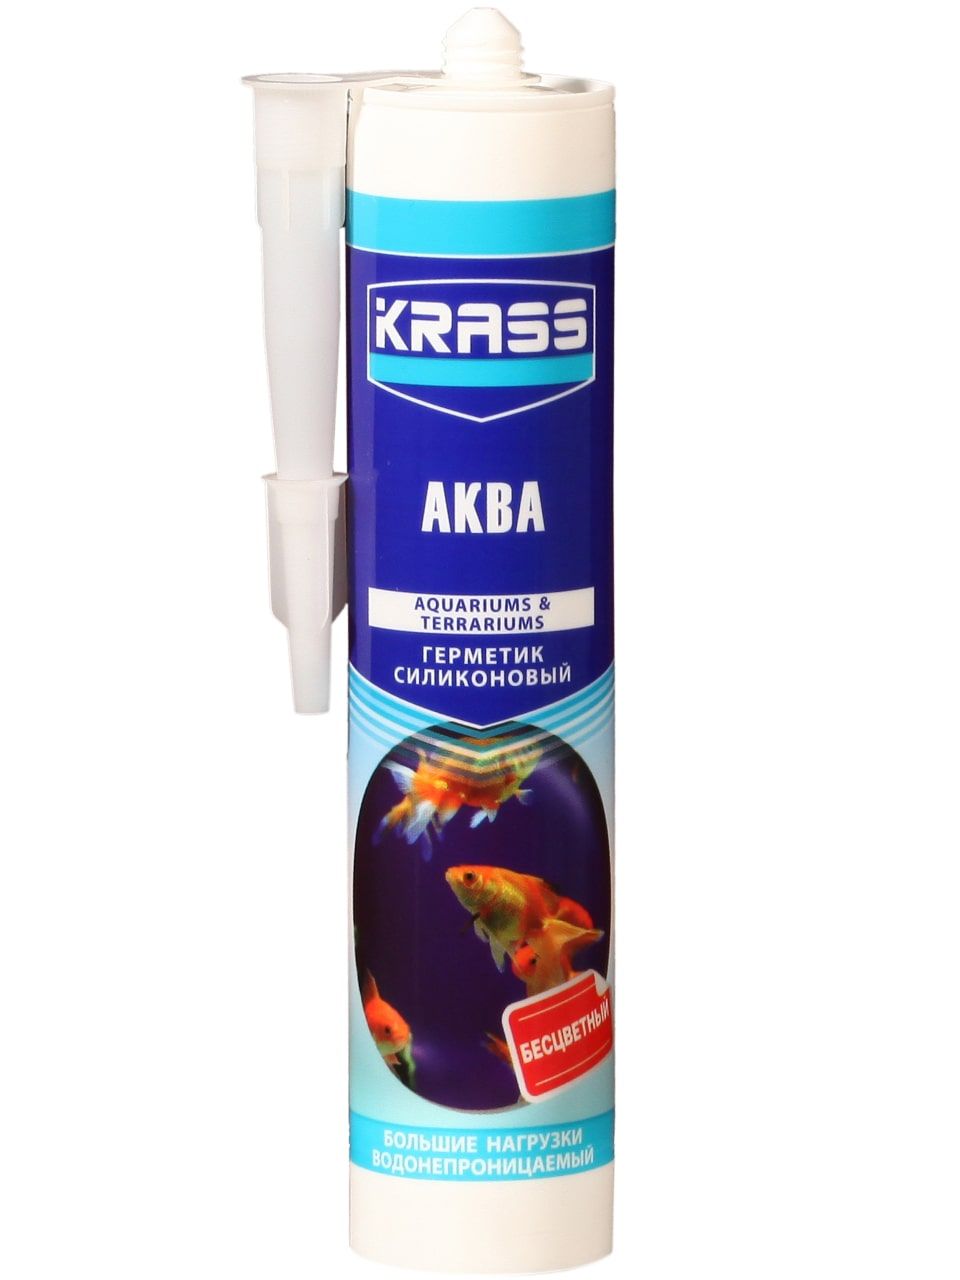 Герметик KRASS силиконовый для аквариумов 300 мл бесцветный /22740